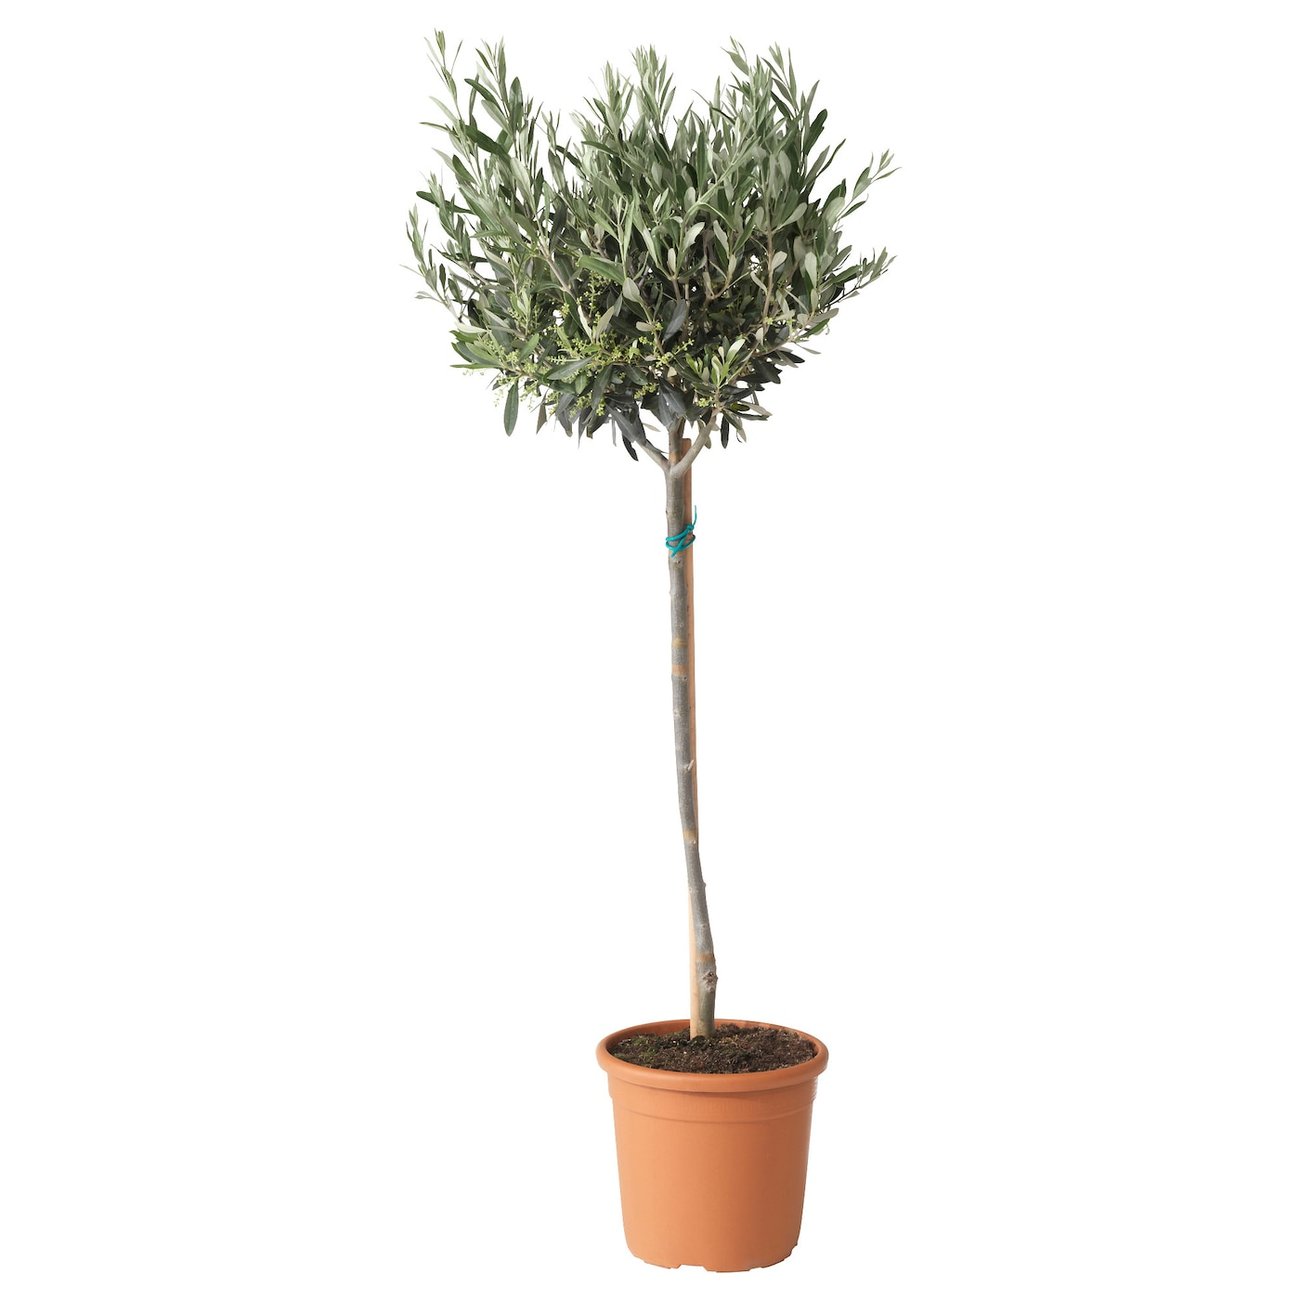 OLEA EUROPAEA Pflanze - Olivenbaum